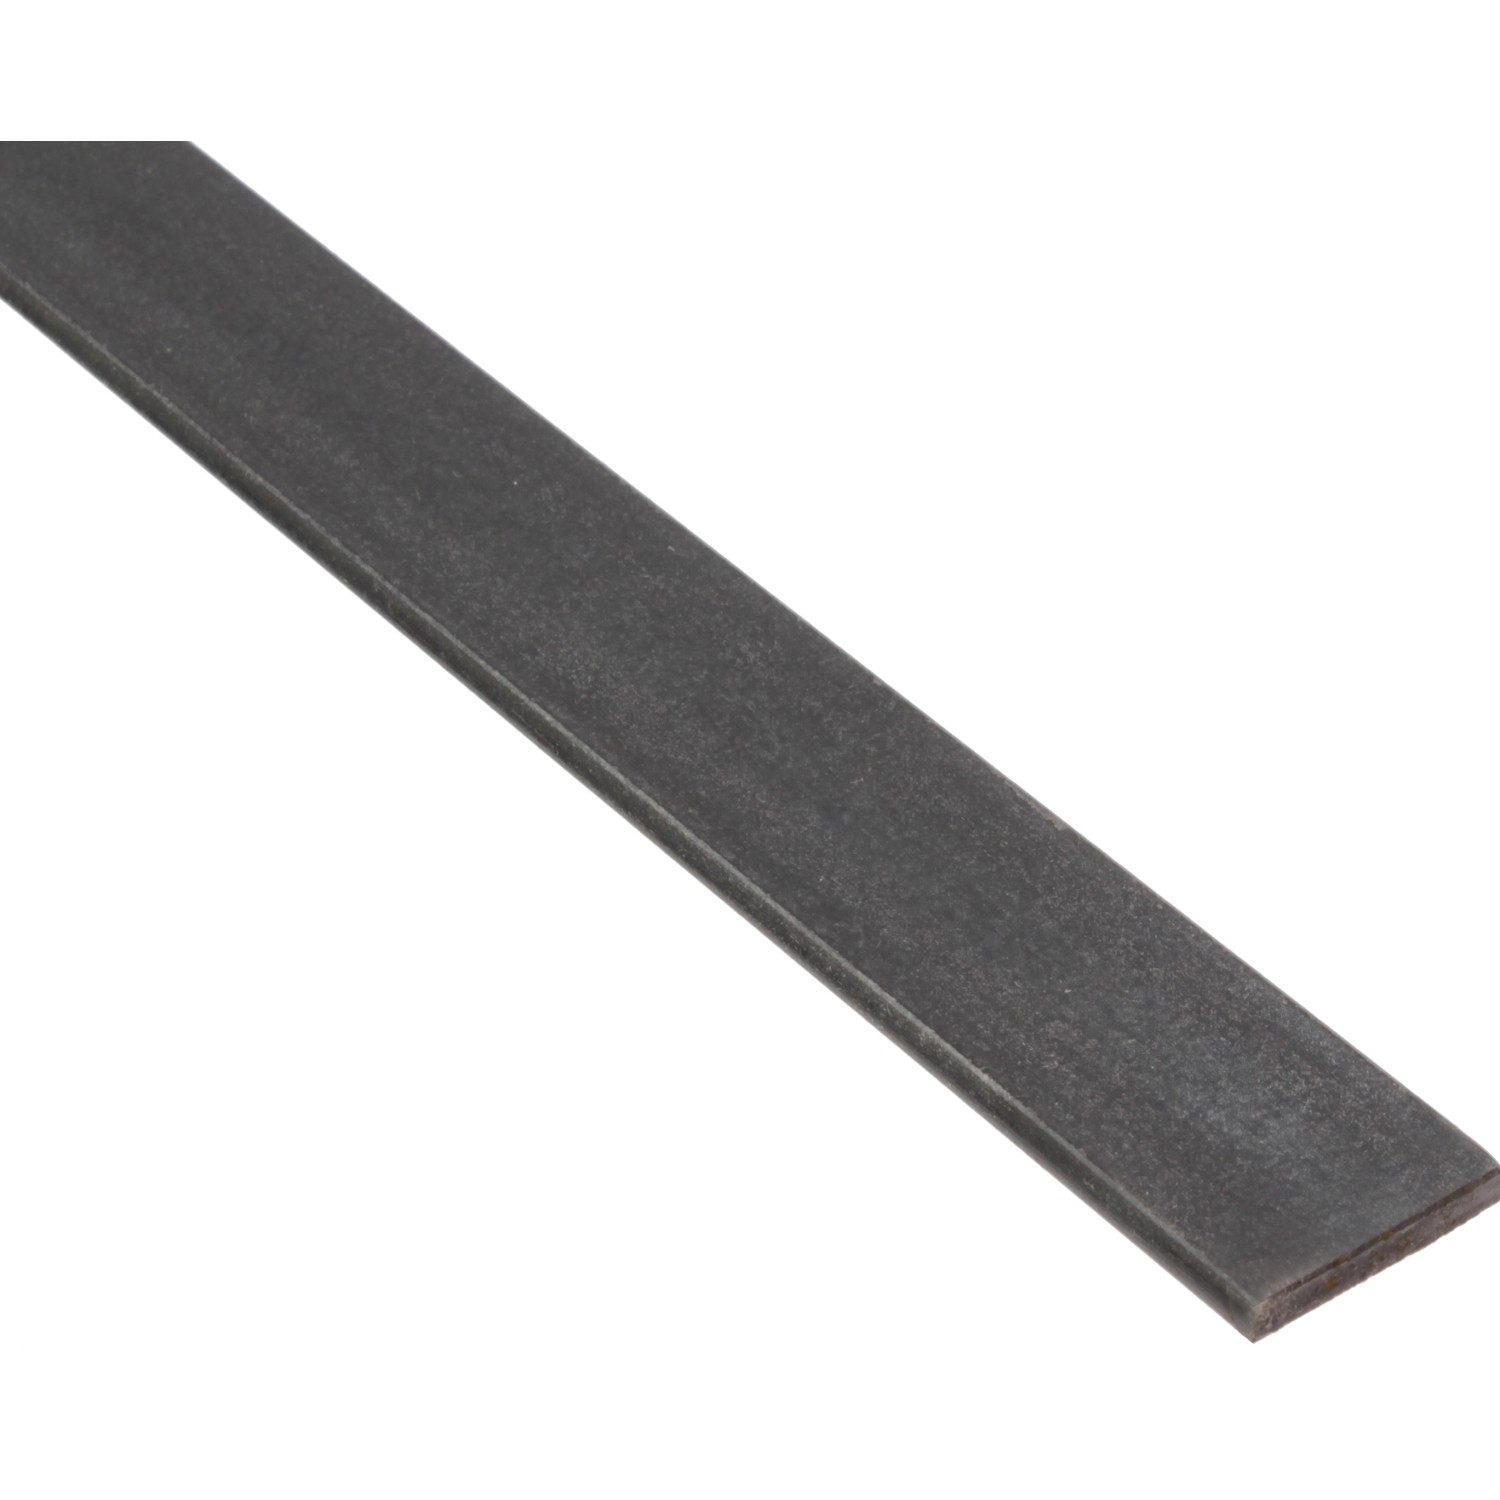 Flachstange Stahl roh Warm gewalzt 2000 mm x 15 mm x 5 mm